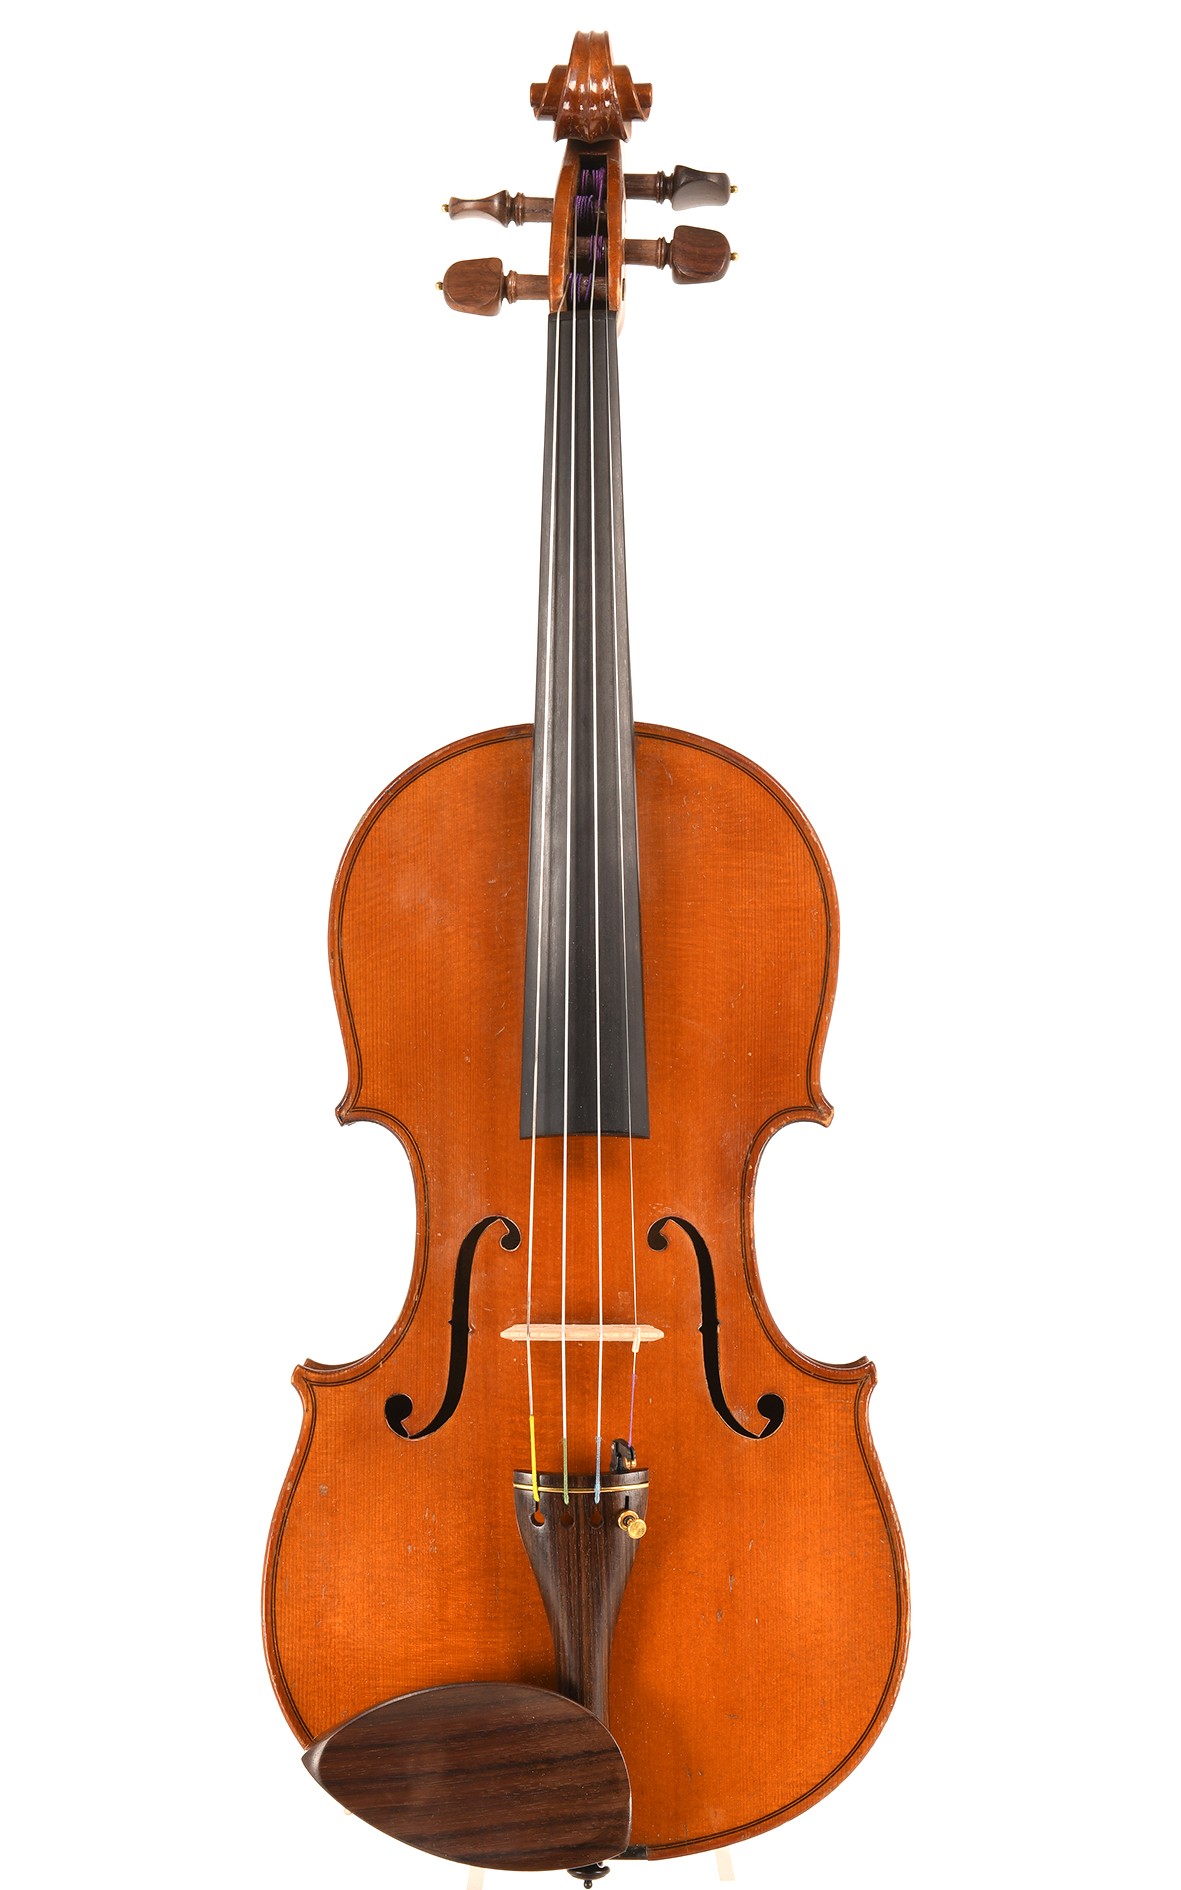 Antique French violin, around 1920